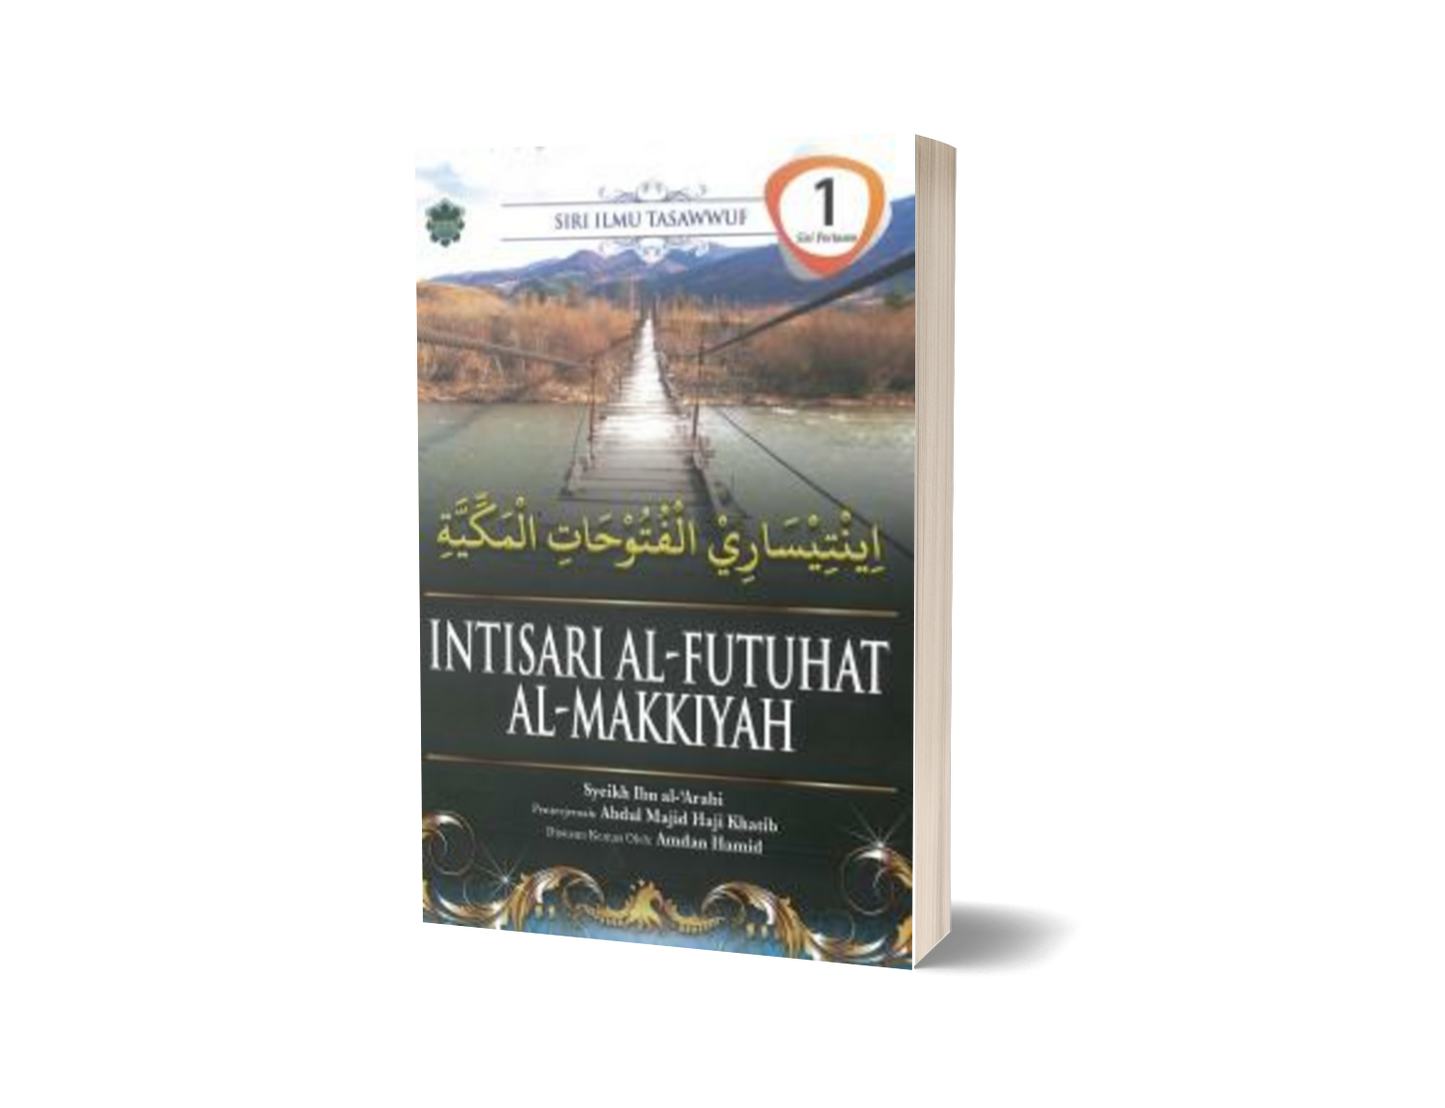 Intisari Al-futuhat Al-Makkiyah Siri 1